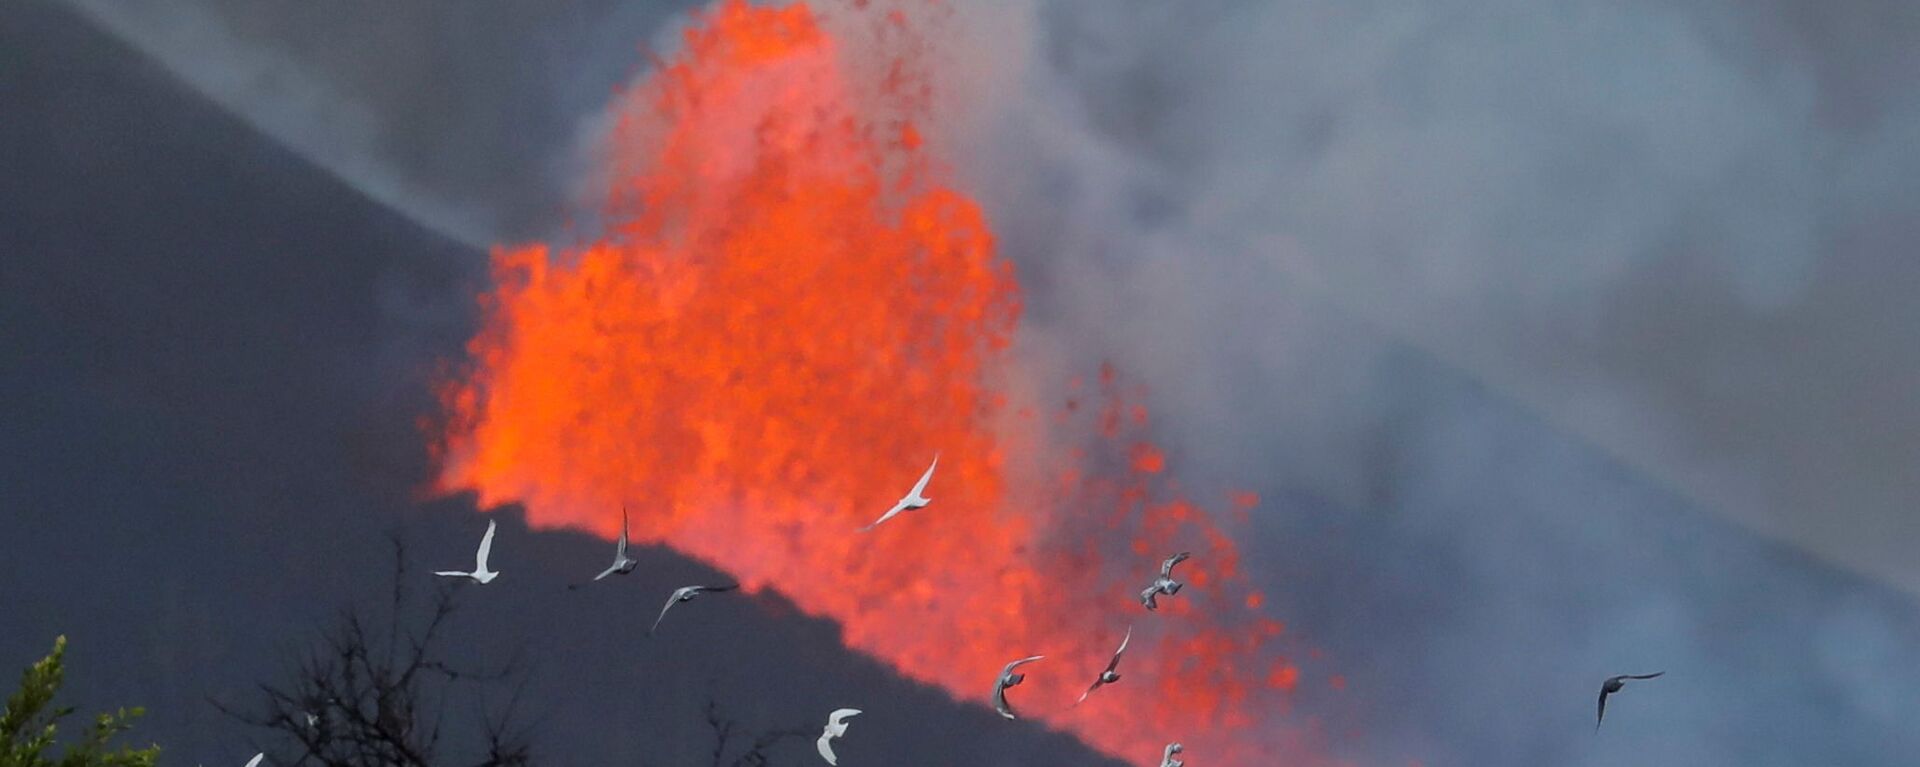 Голуби на фоне лавы после извержения вулкана на канарском острове Ла-Пальма  - Sputnik Србија, 1920, 05.10.2021